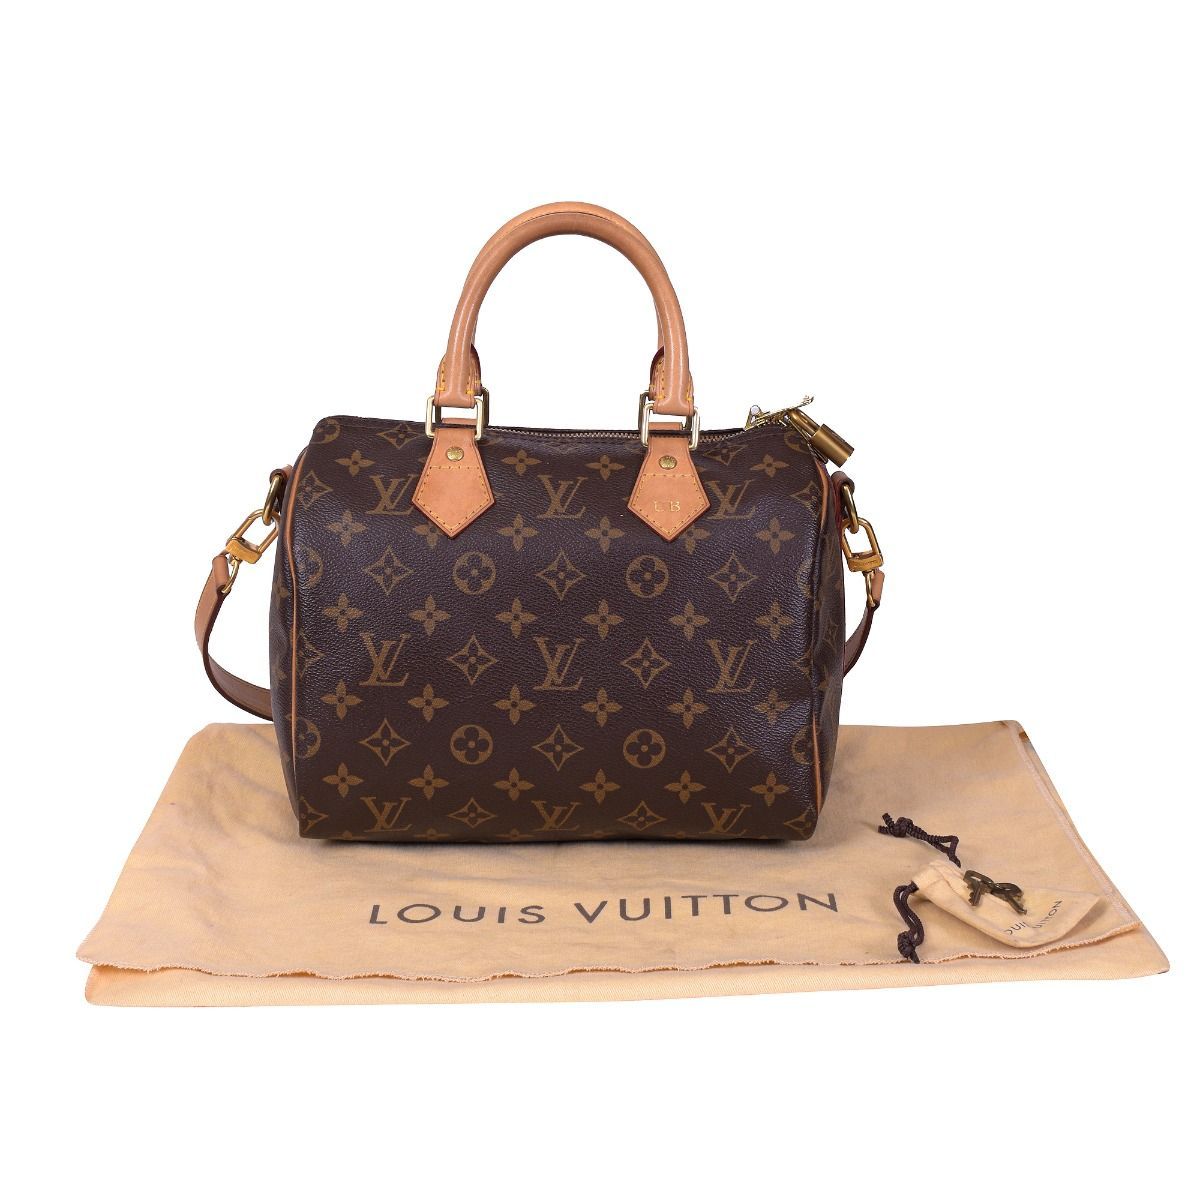 Louis Vuitton Monogram Speedy Bandoulière 25 Bag